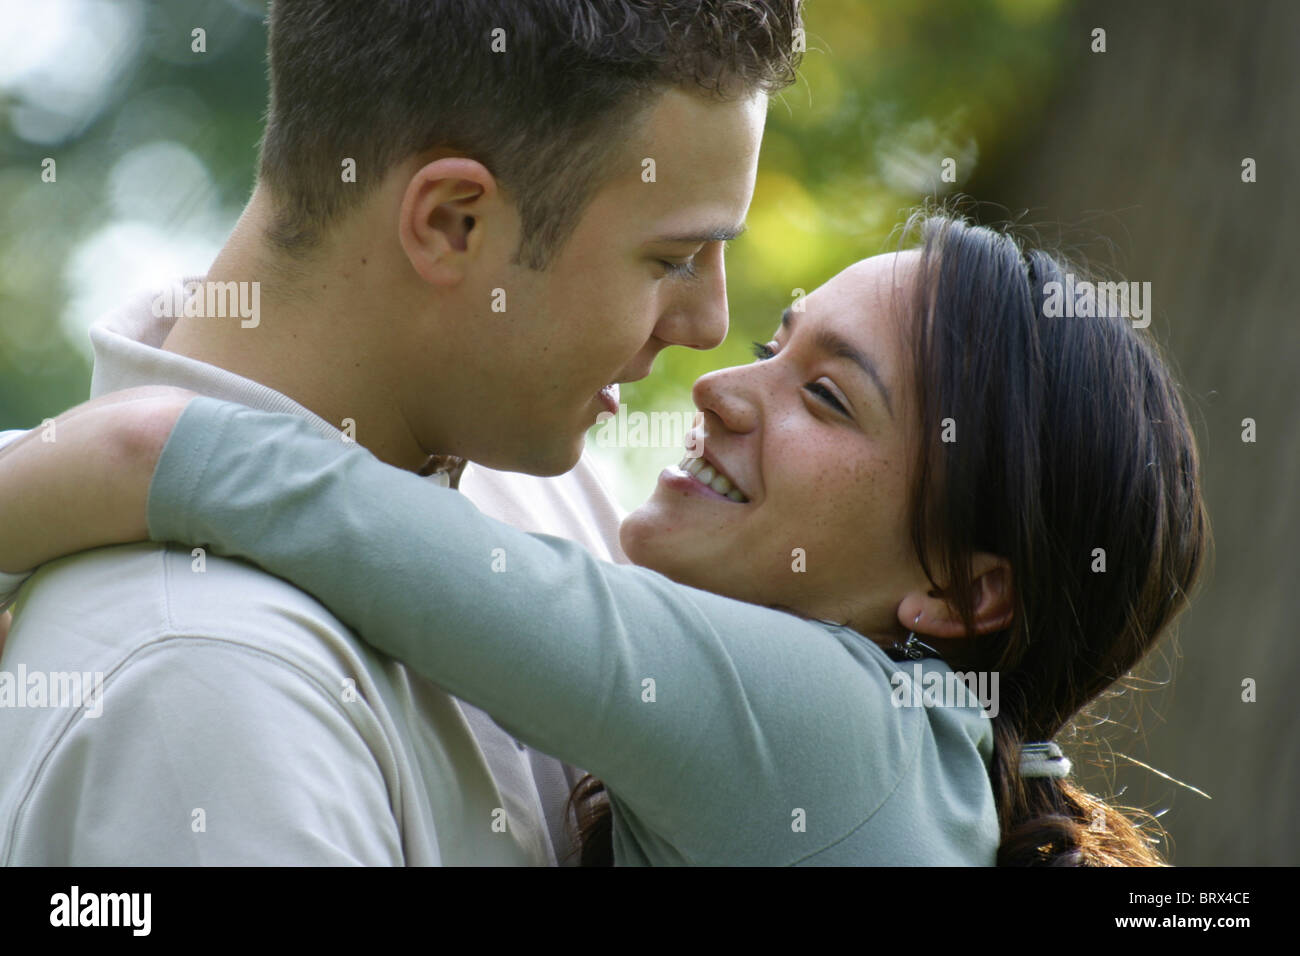 Romance adolescente, joven asiática abrazando a su novio fuera y una sonrisa. Foto de stock